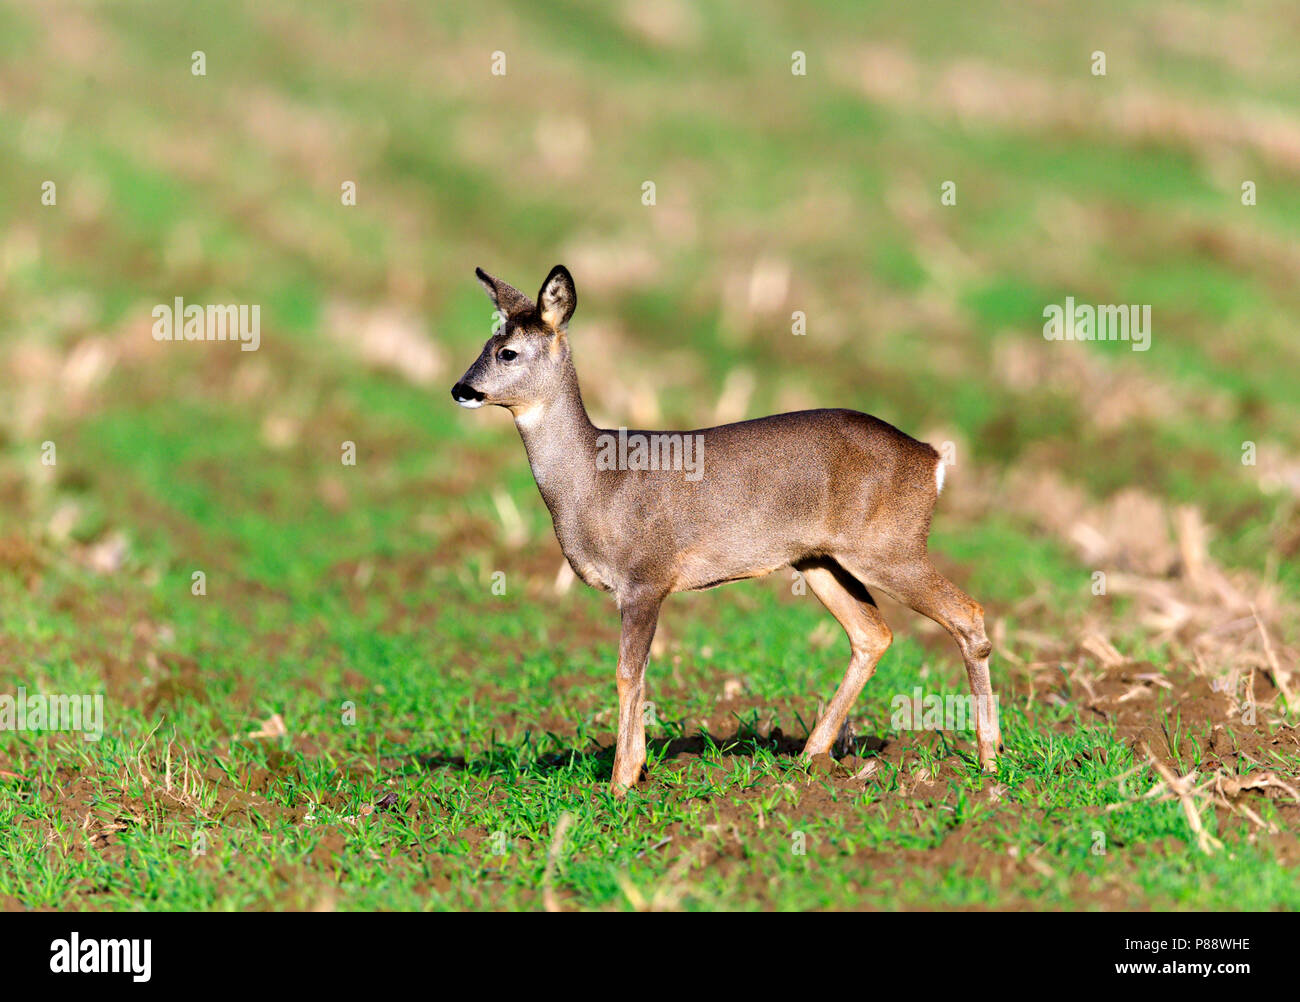 Ree op akker;Roe Deer standing on arable field Stock Photo